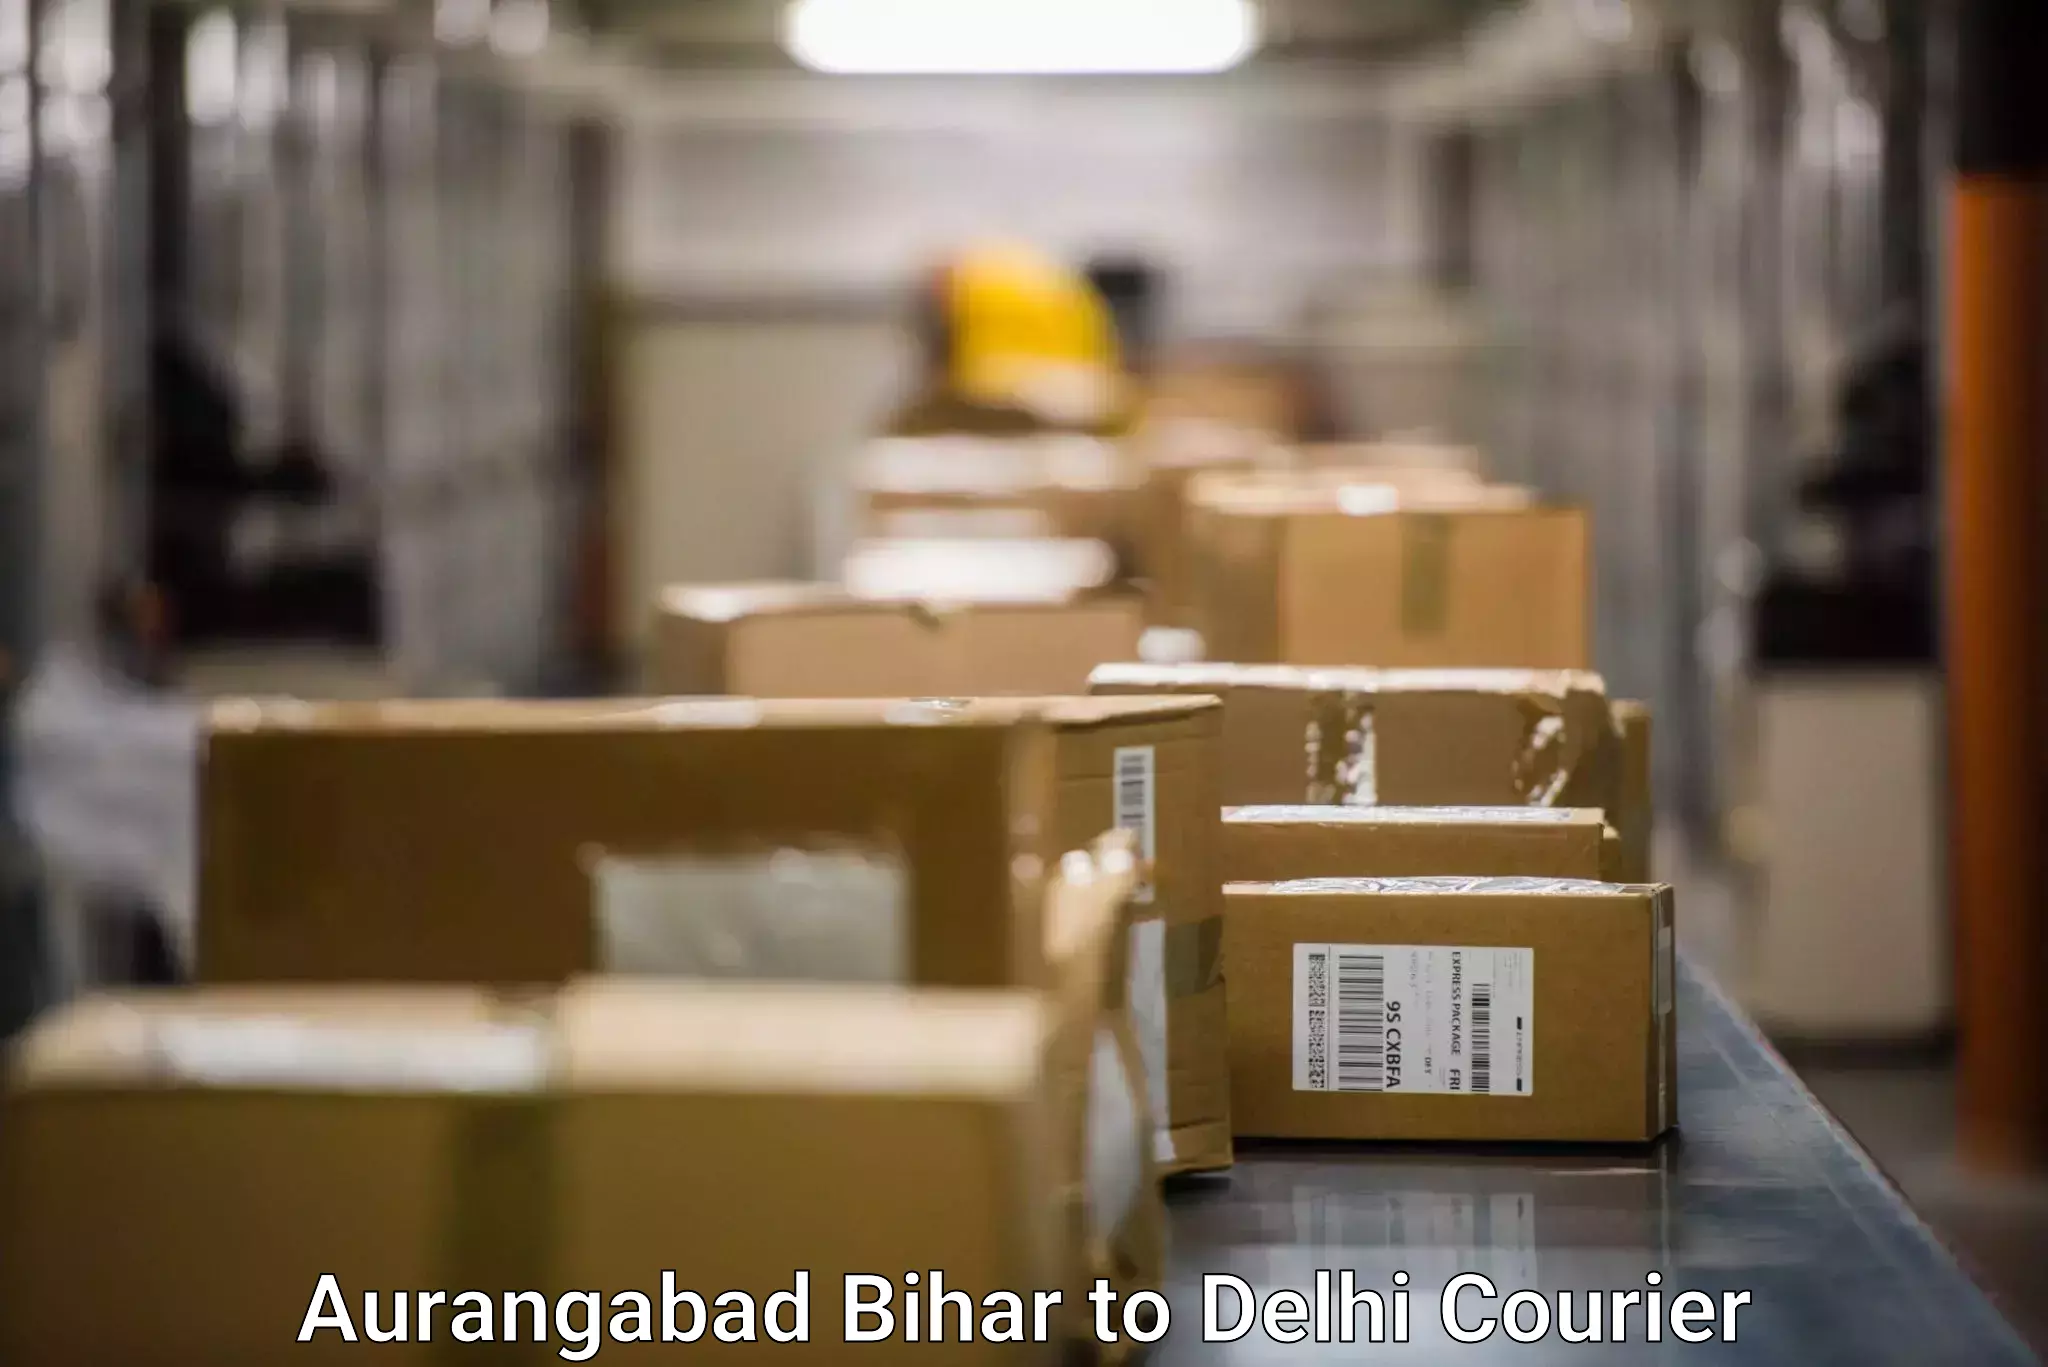 Smart shipping technology Aurangabad Bihar to Sarojini Nagar